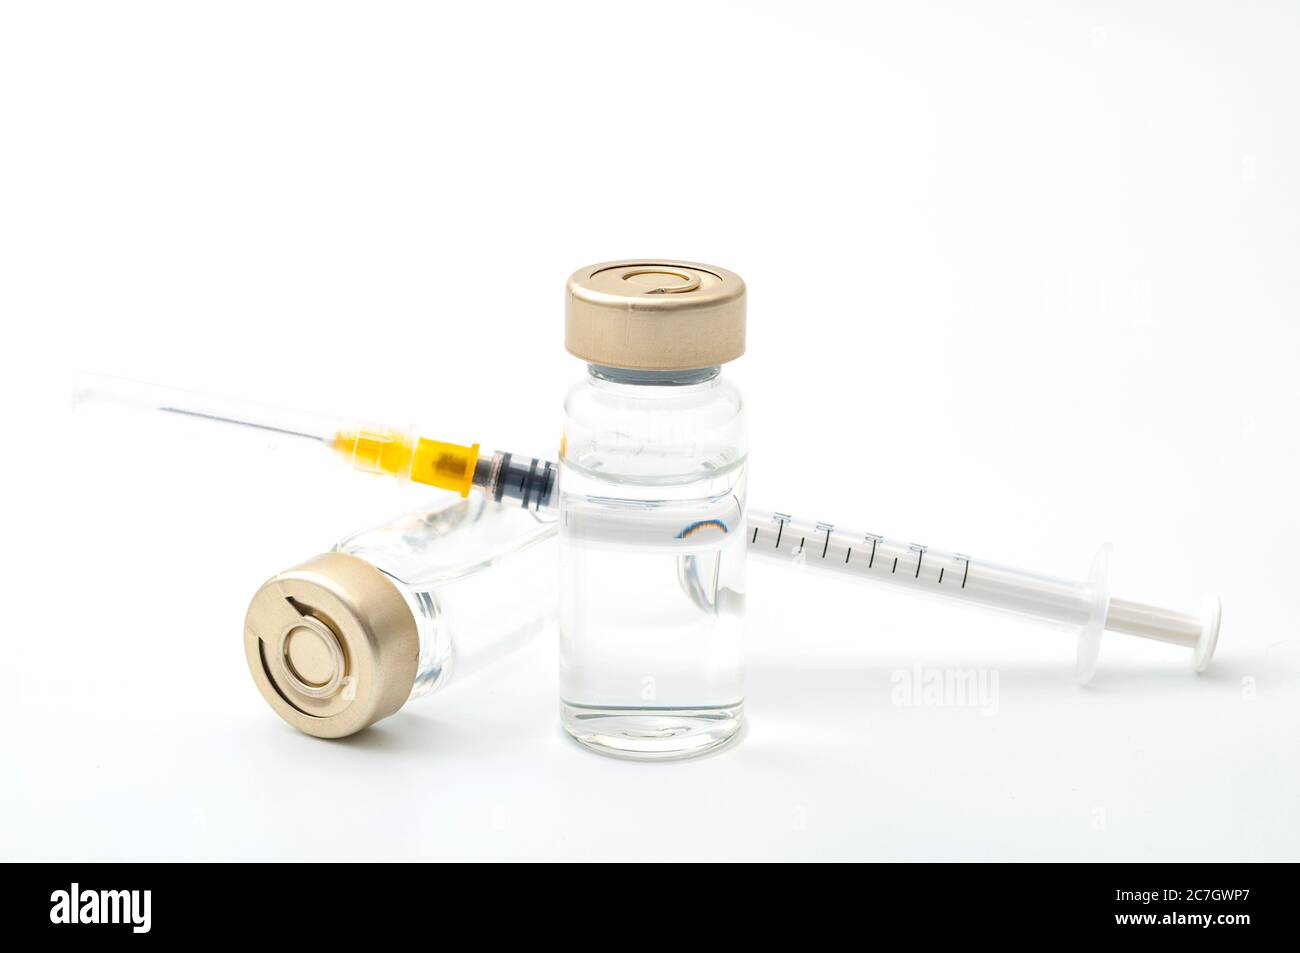 Impfstoffe, Botulinumtoxin und Insulinampullen – Konzeptthema mit Glasfläschchen mit klarer Flüssigkeit neben einer Spritze und einer auf W isolierten, hypodermischen Nadel Stockfoto